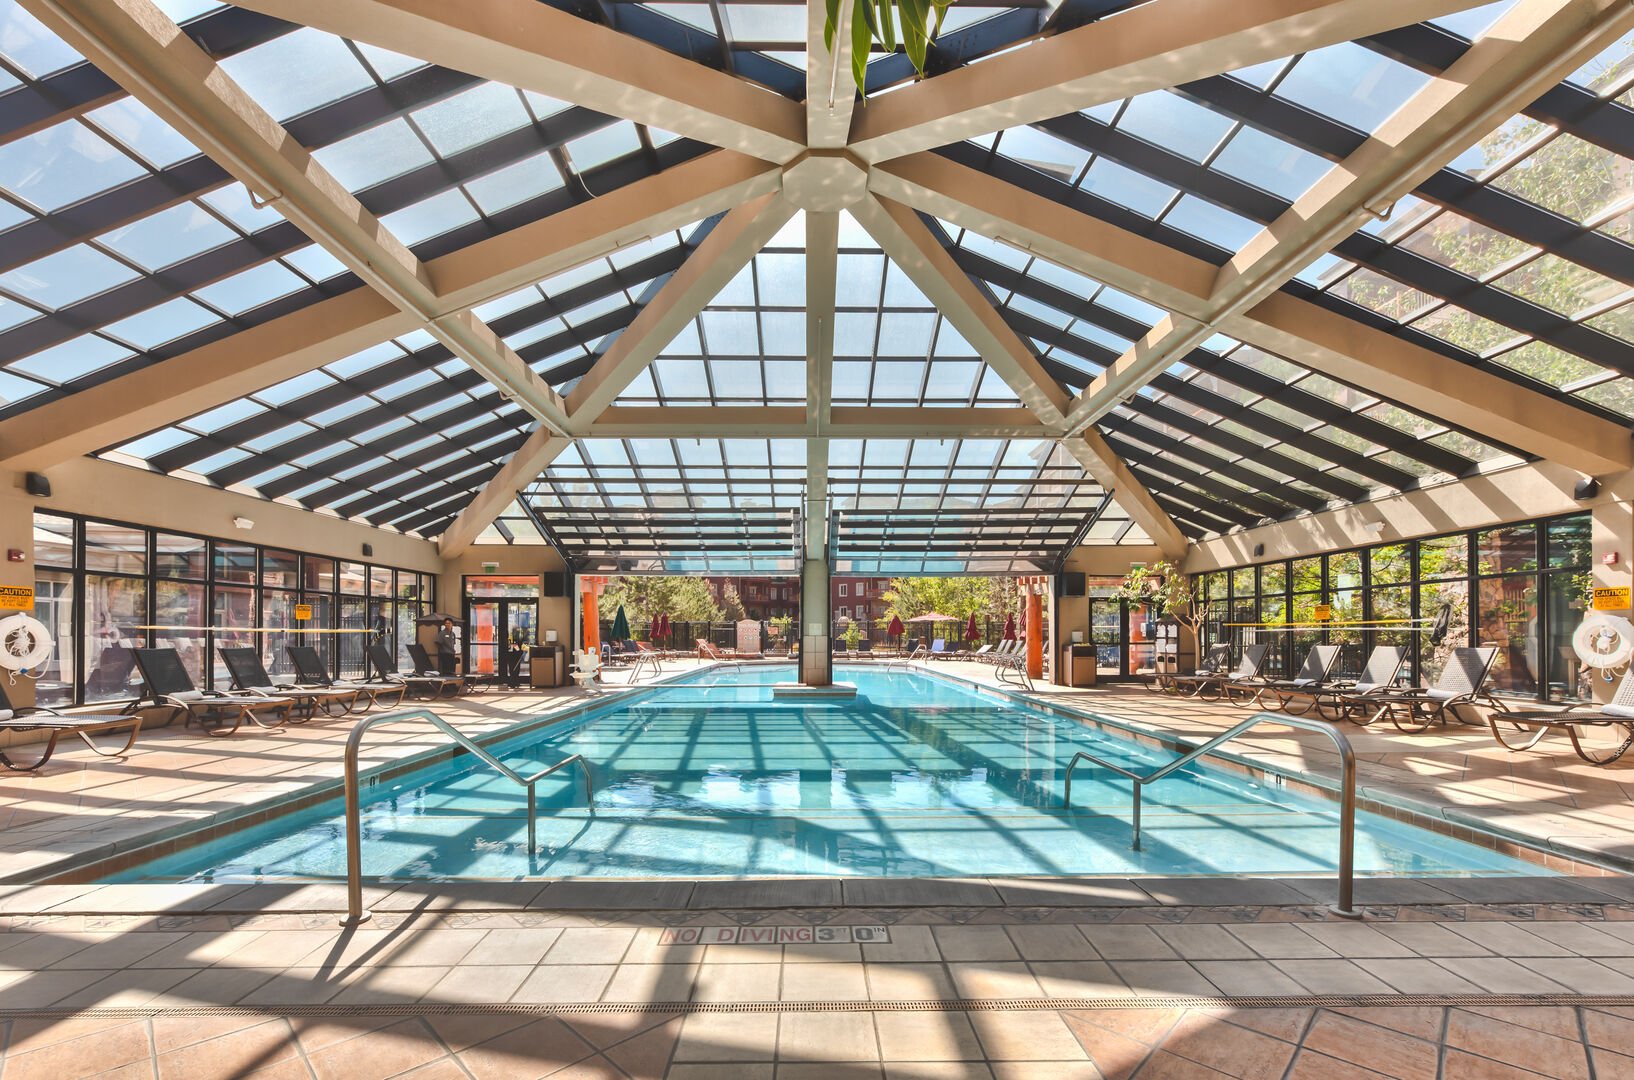 Main (indoor / outdoor) pool